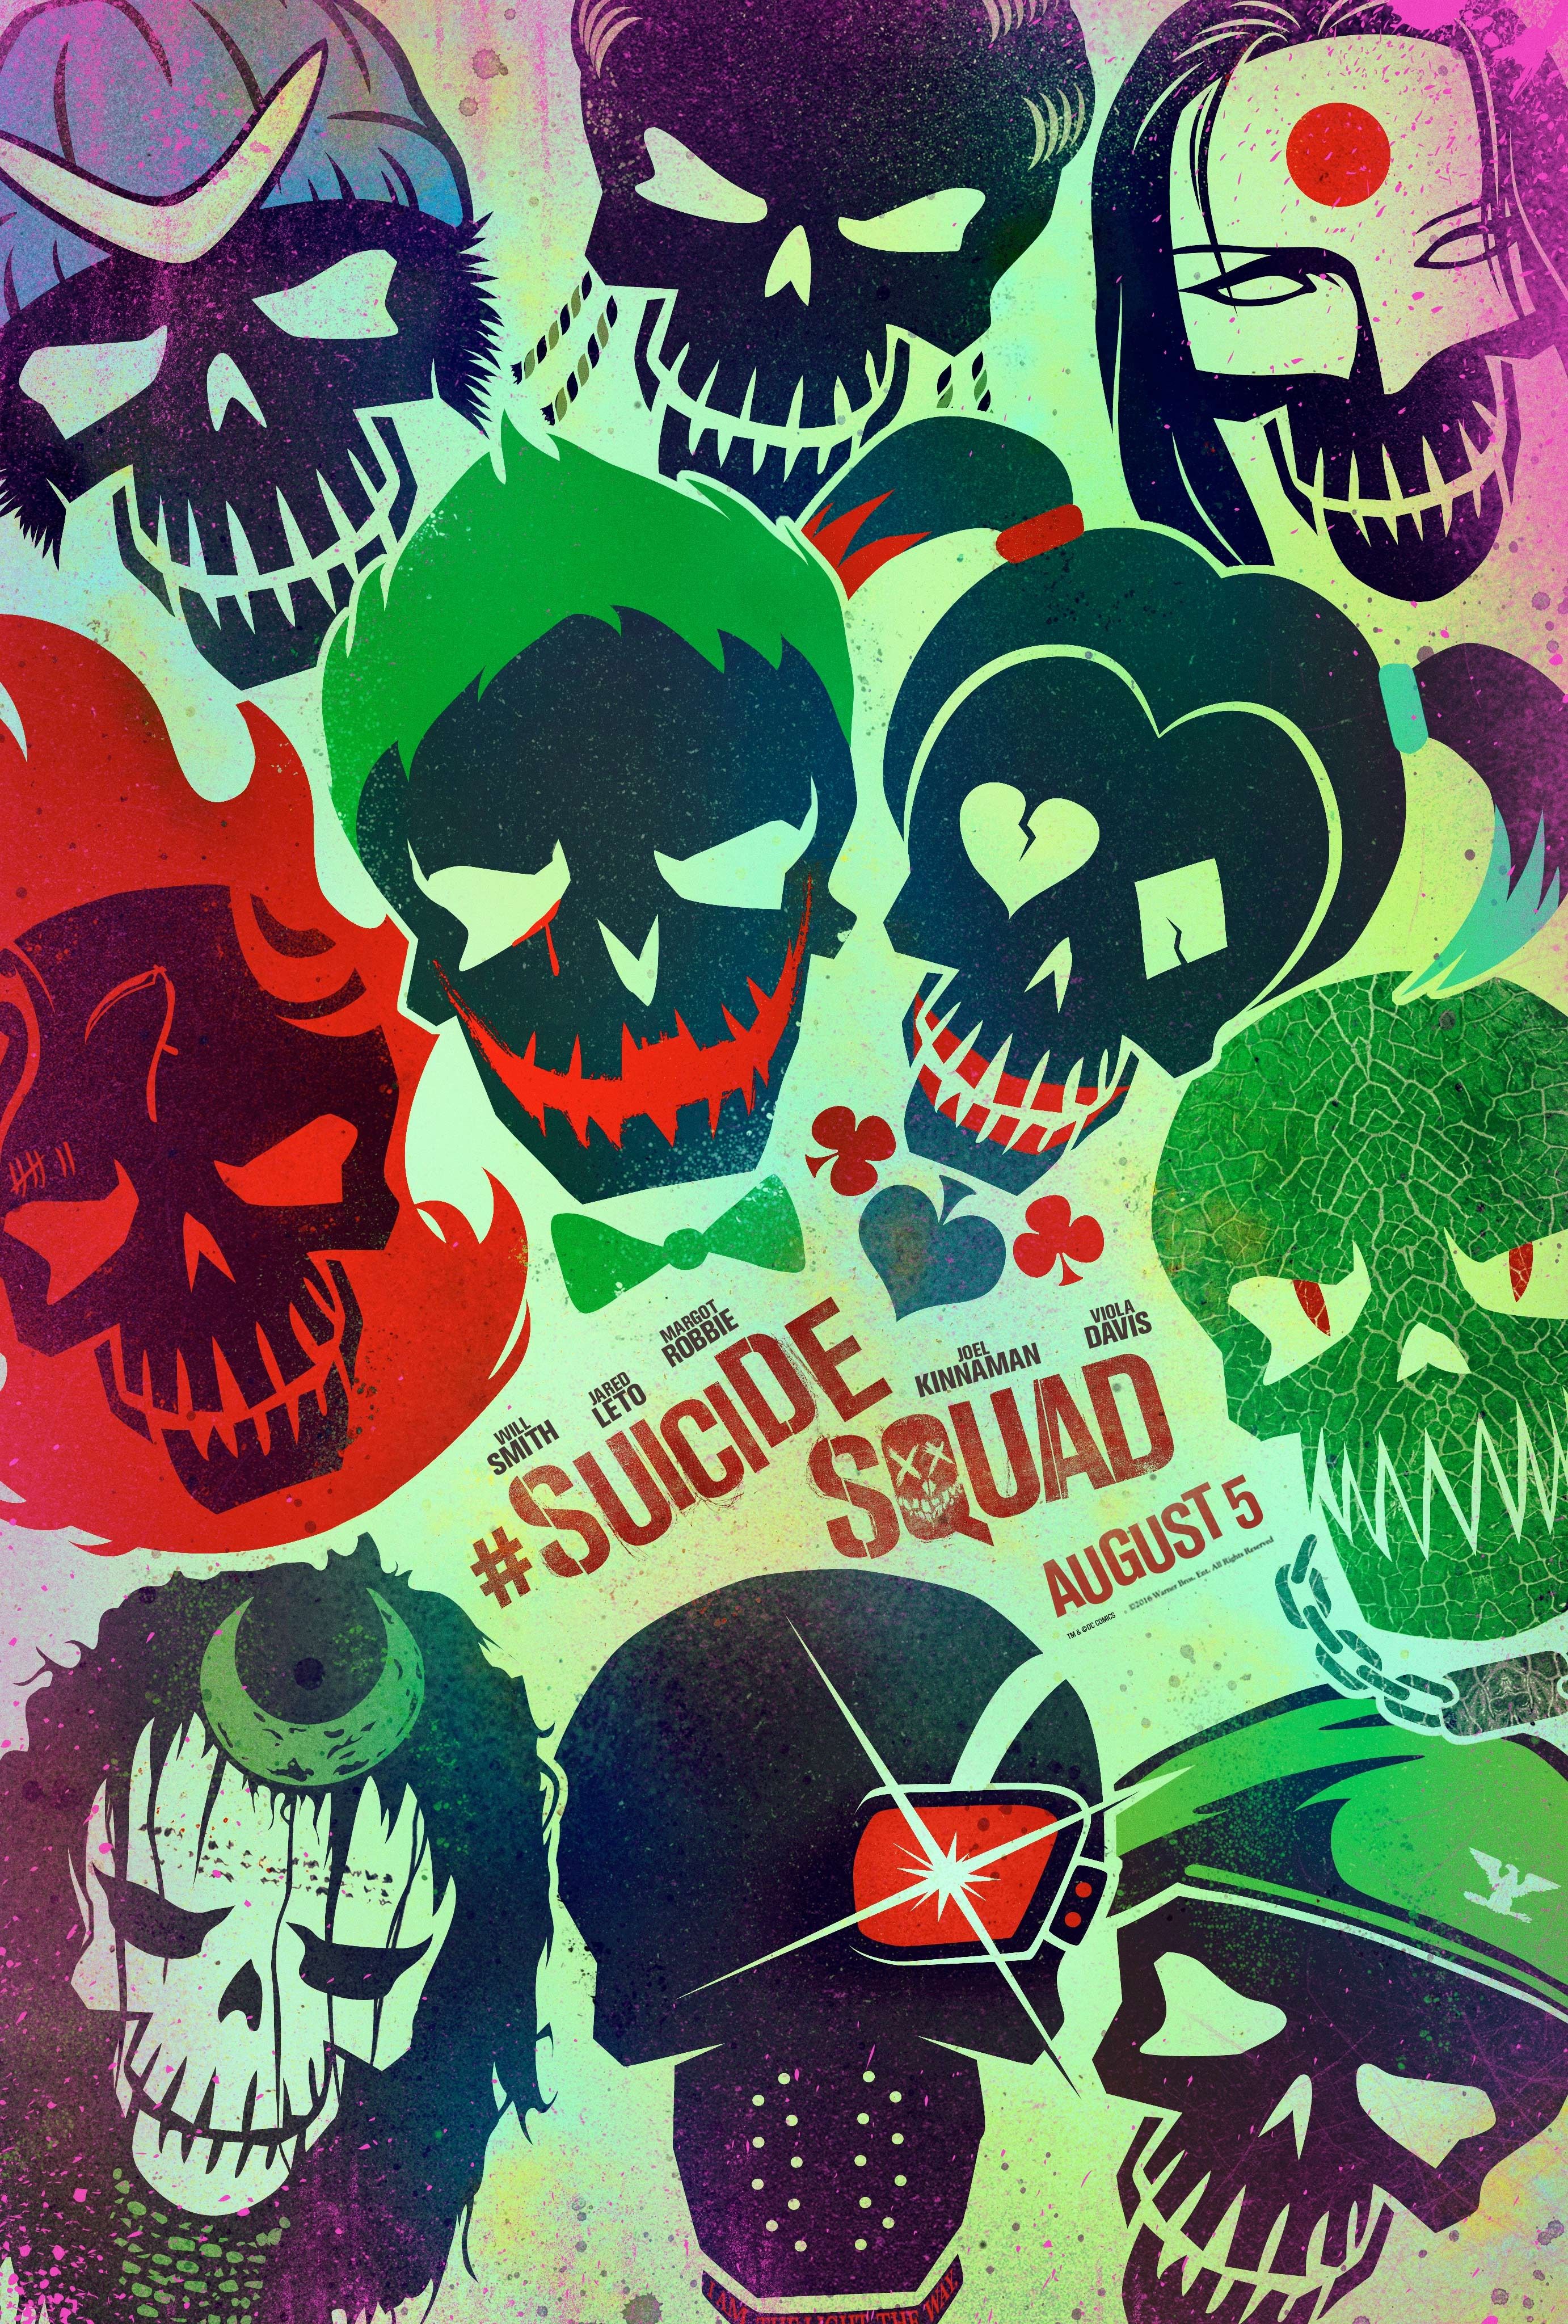 Wallpaper, illustration, cartoon, Suicide Squad, comics, poster, ART, font, album cover, comic book 2764x4096